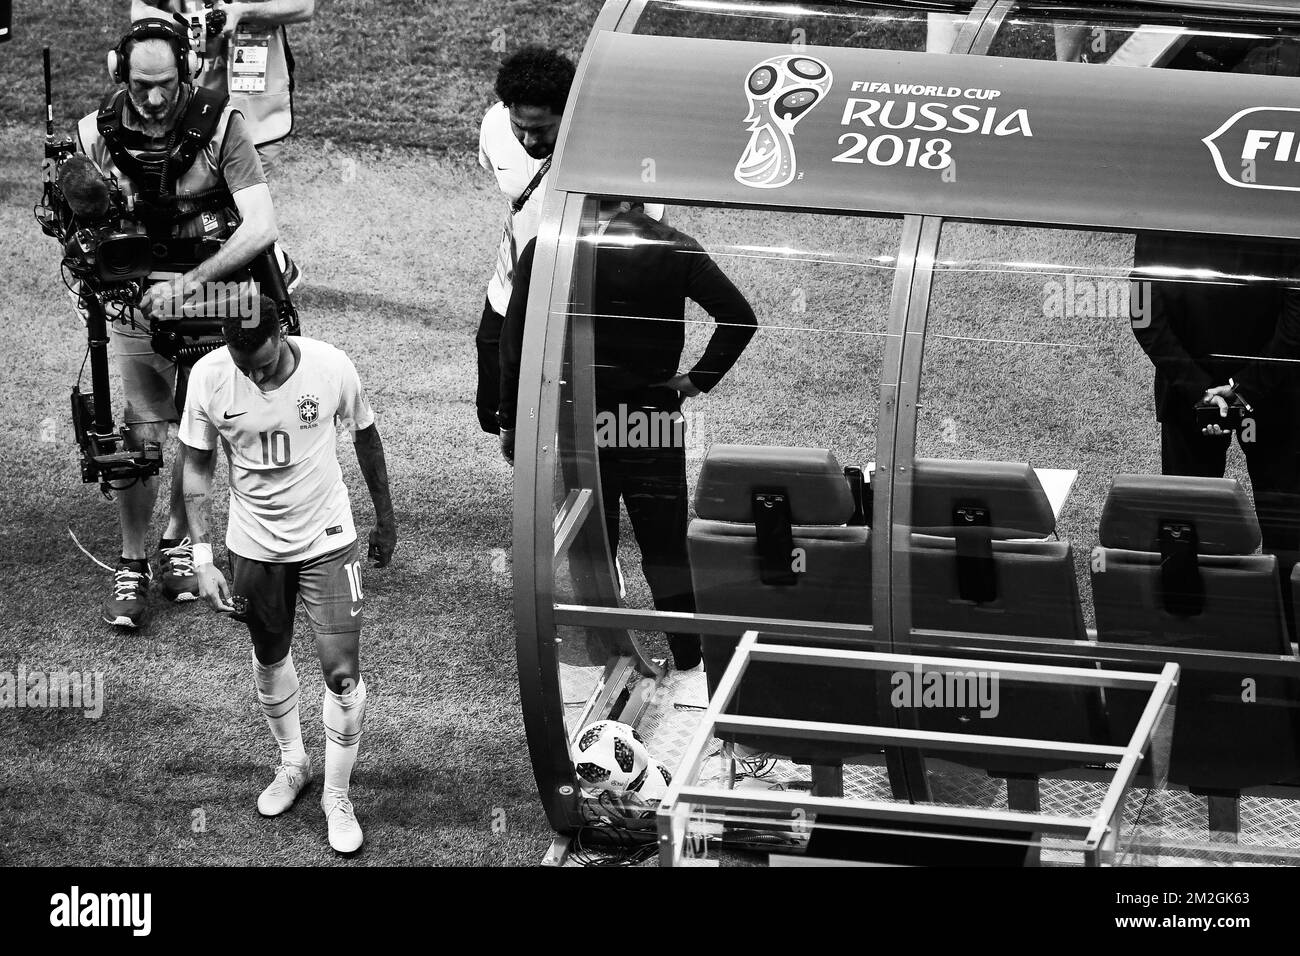 Il brasiliano Neymar lascia il campo dopo aver perso una partita di calcio tra la nazionale belga dei Red Devils e il Brasile a Kazan, Russia, venerdì 06 luglio 2018, i quarti di finale della Coppa del mondo FIFA 2018. FOTO DI BELGA LAURIE DIEFFEMBACQ Foto Stock